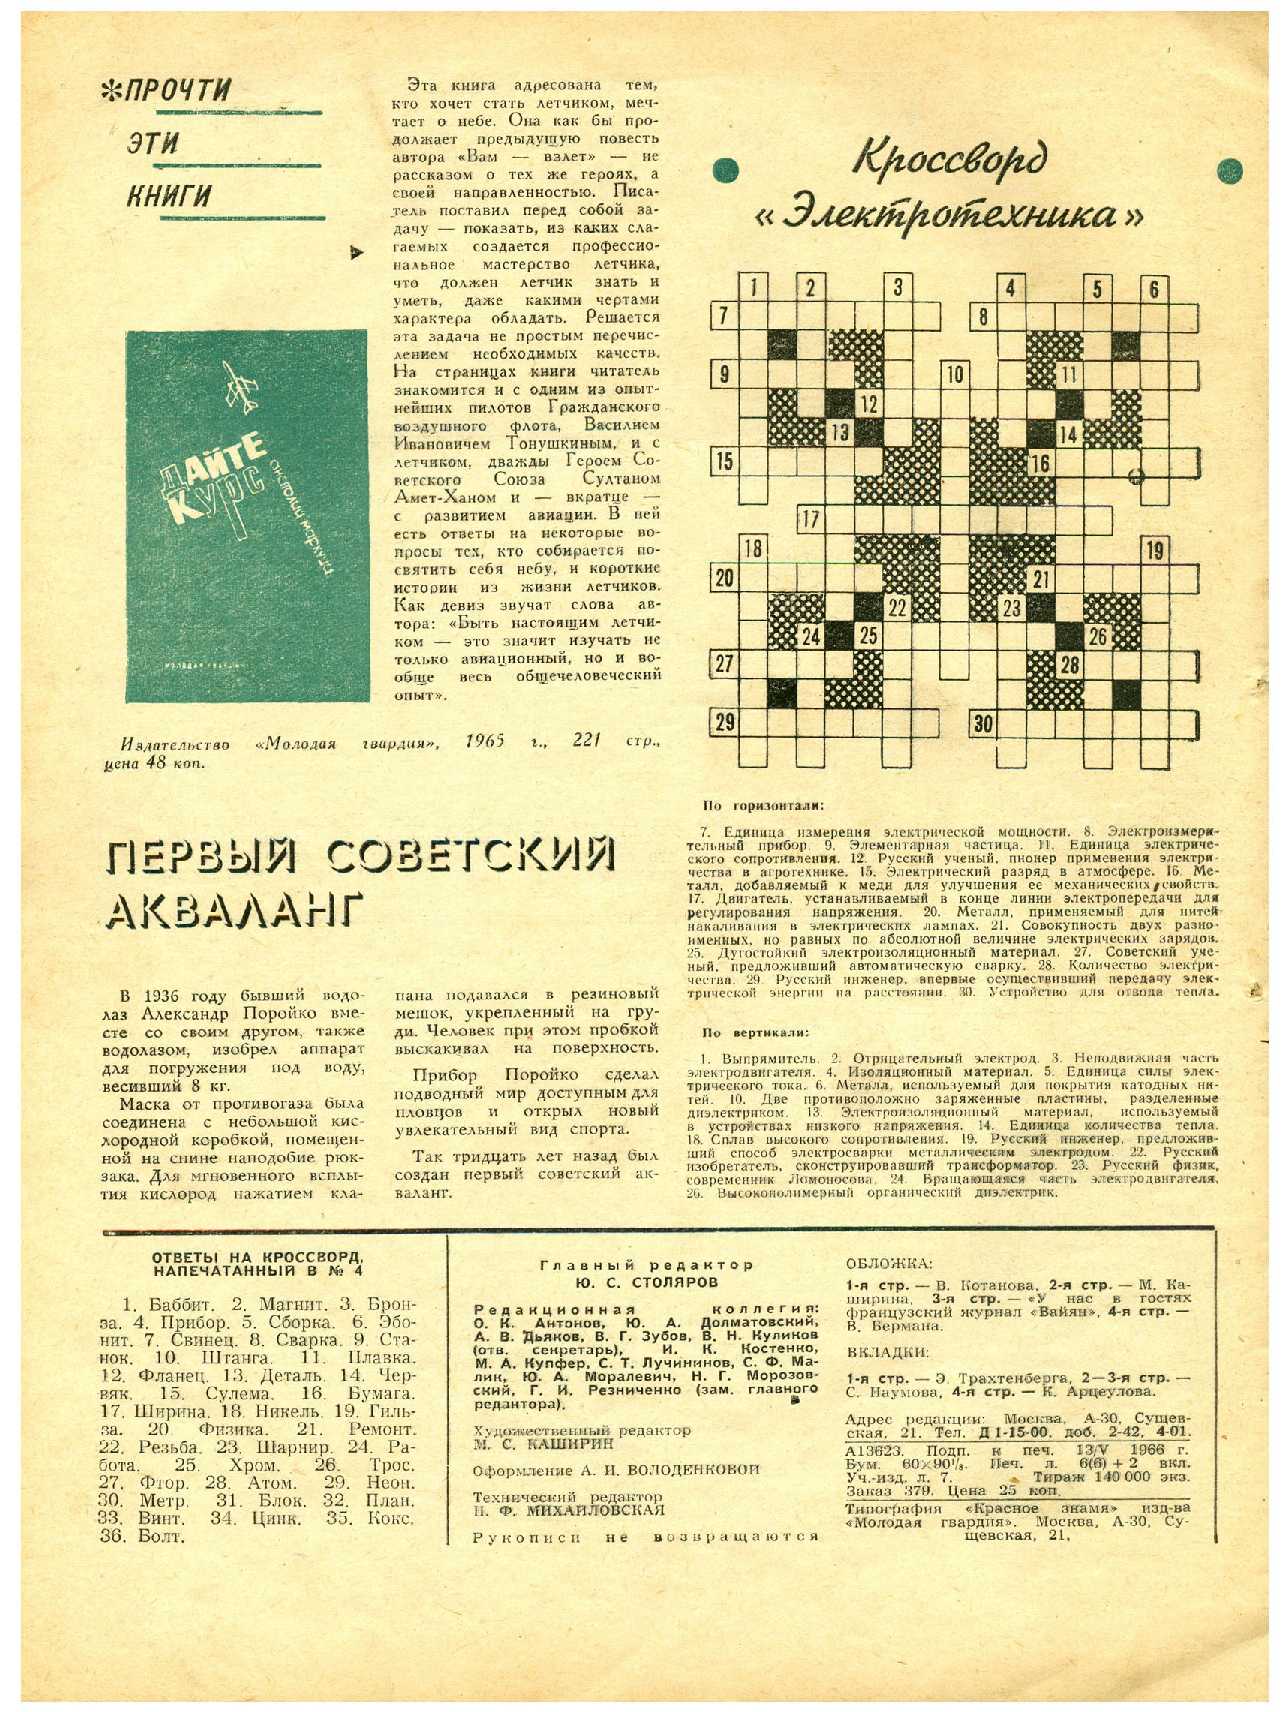 МК 5, 1966, 48 c.